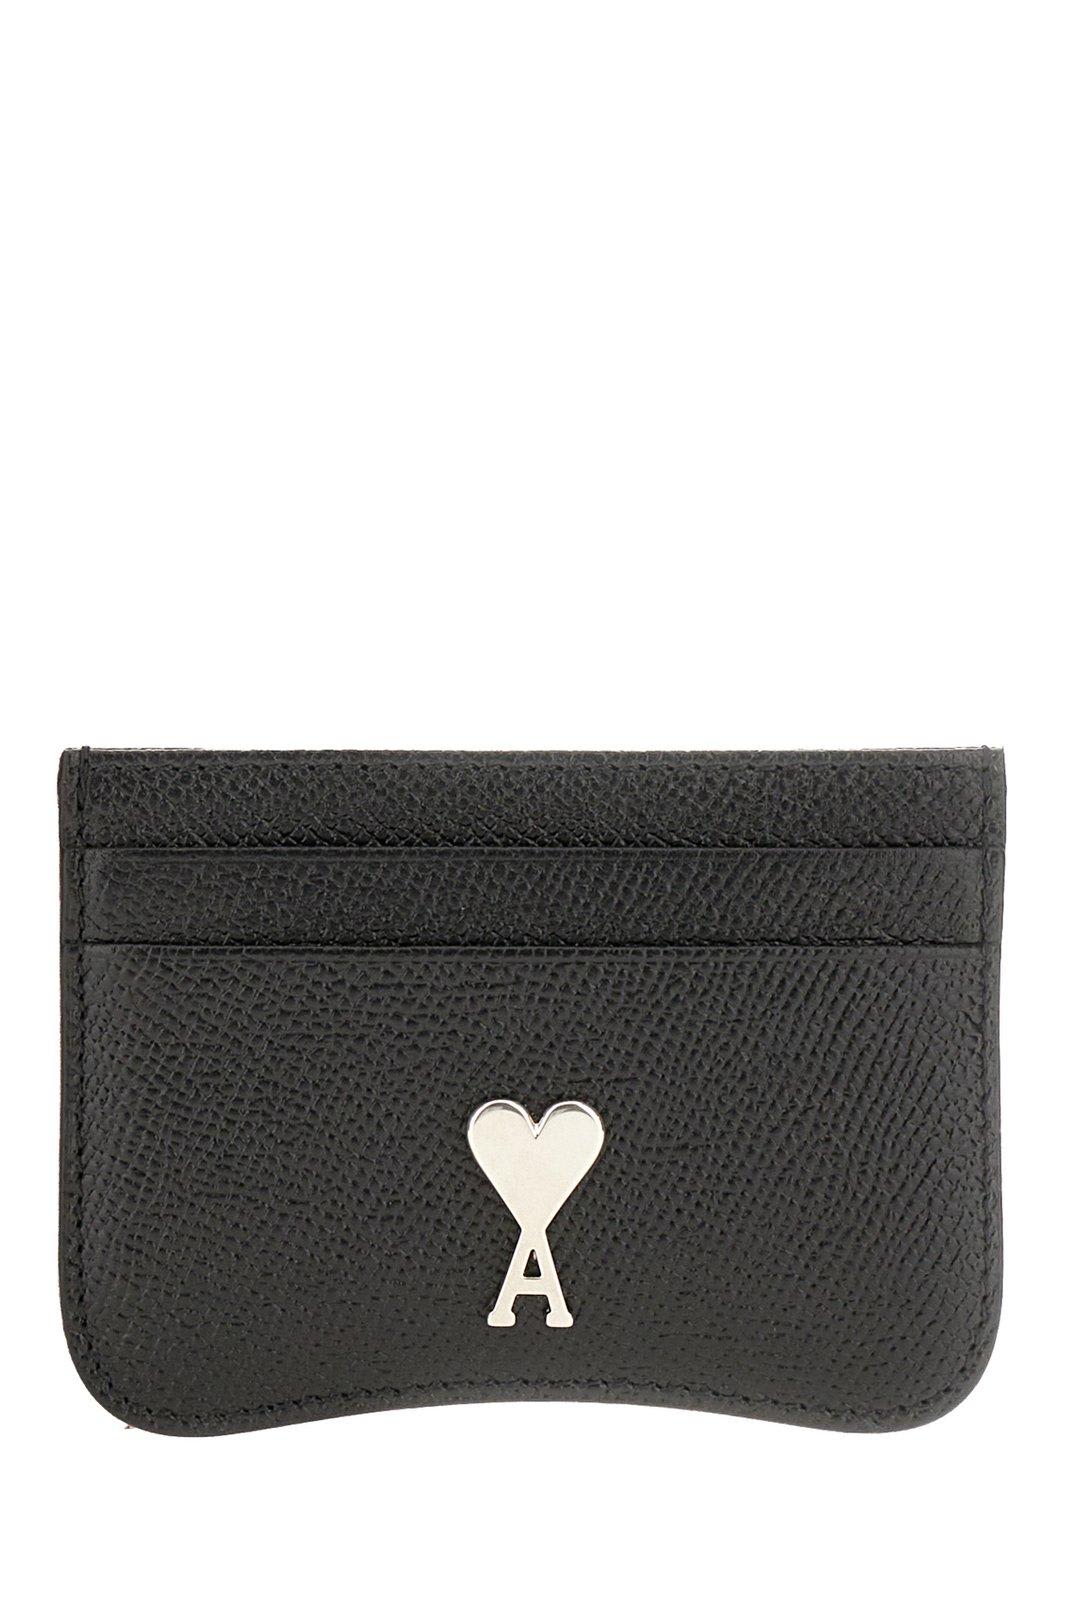 Ami Alexandre Mattiussi Paris Ami De Coeur Logo Plaque Cardholder In Black